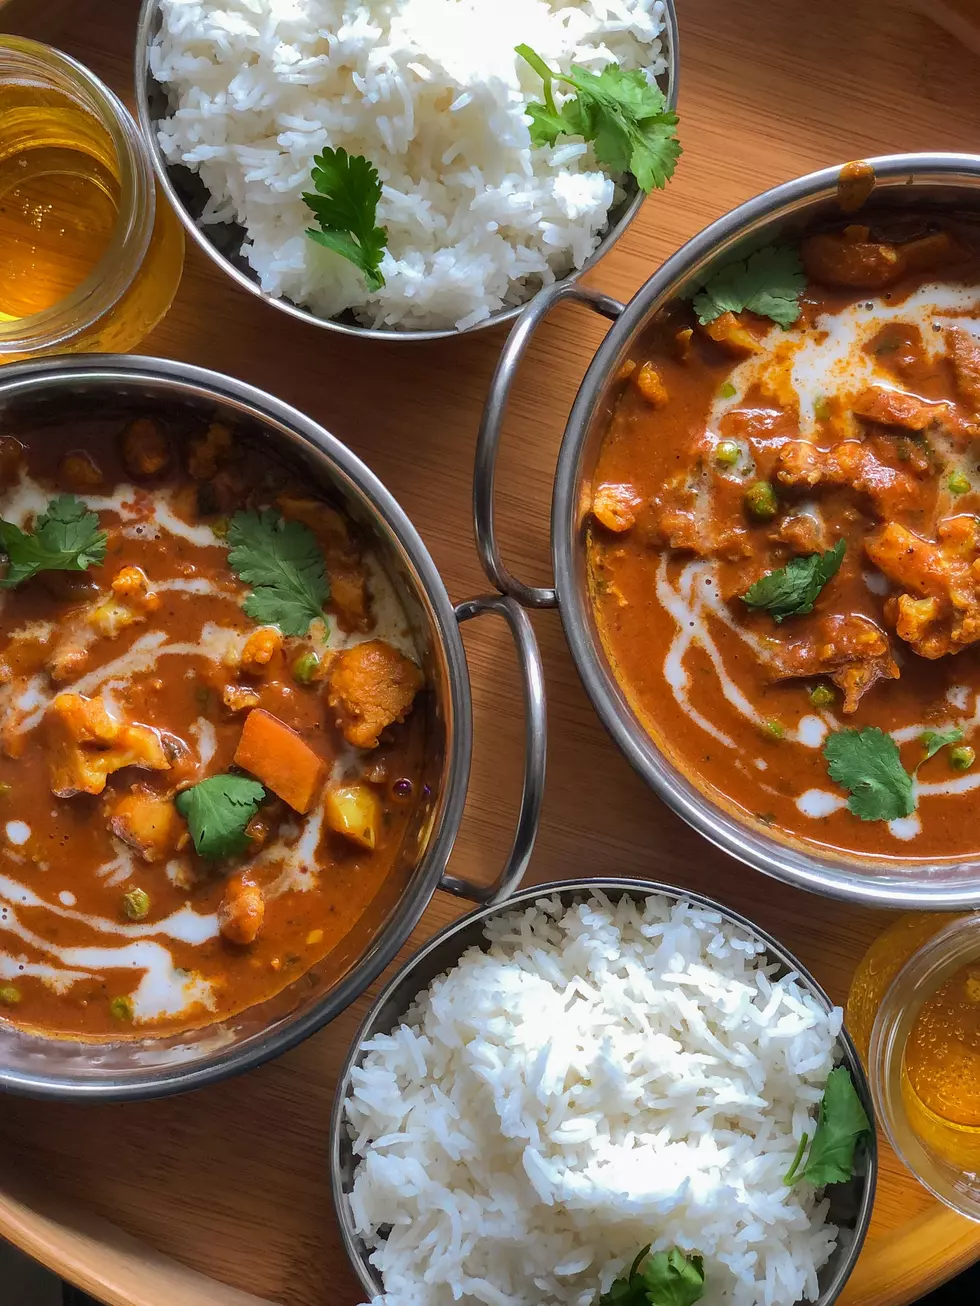 Kalamazoo’s Favorite Spots For Fantastic Indian Food